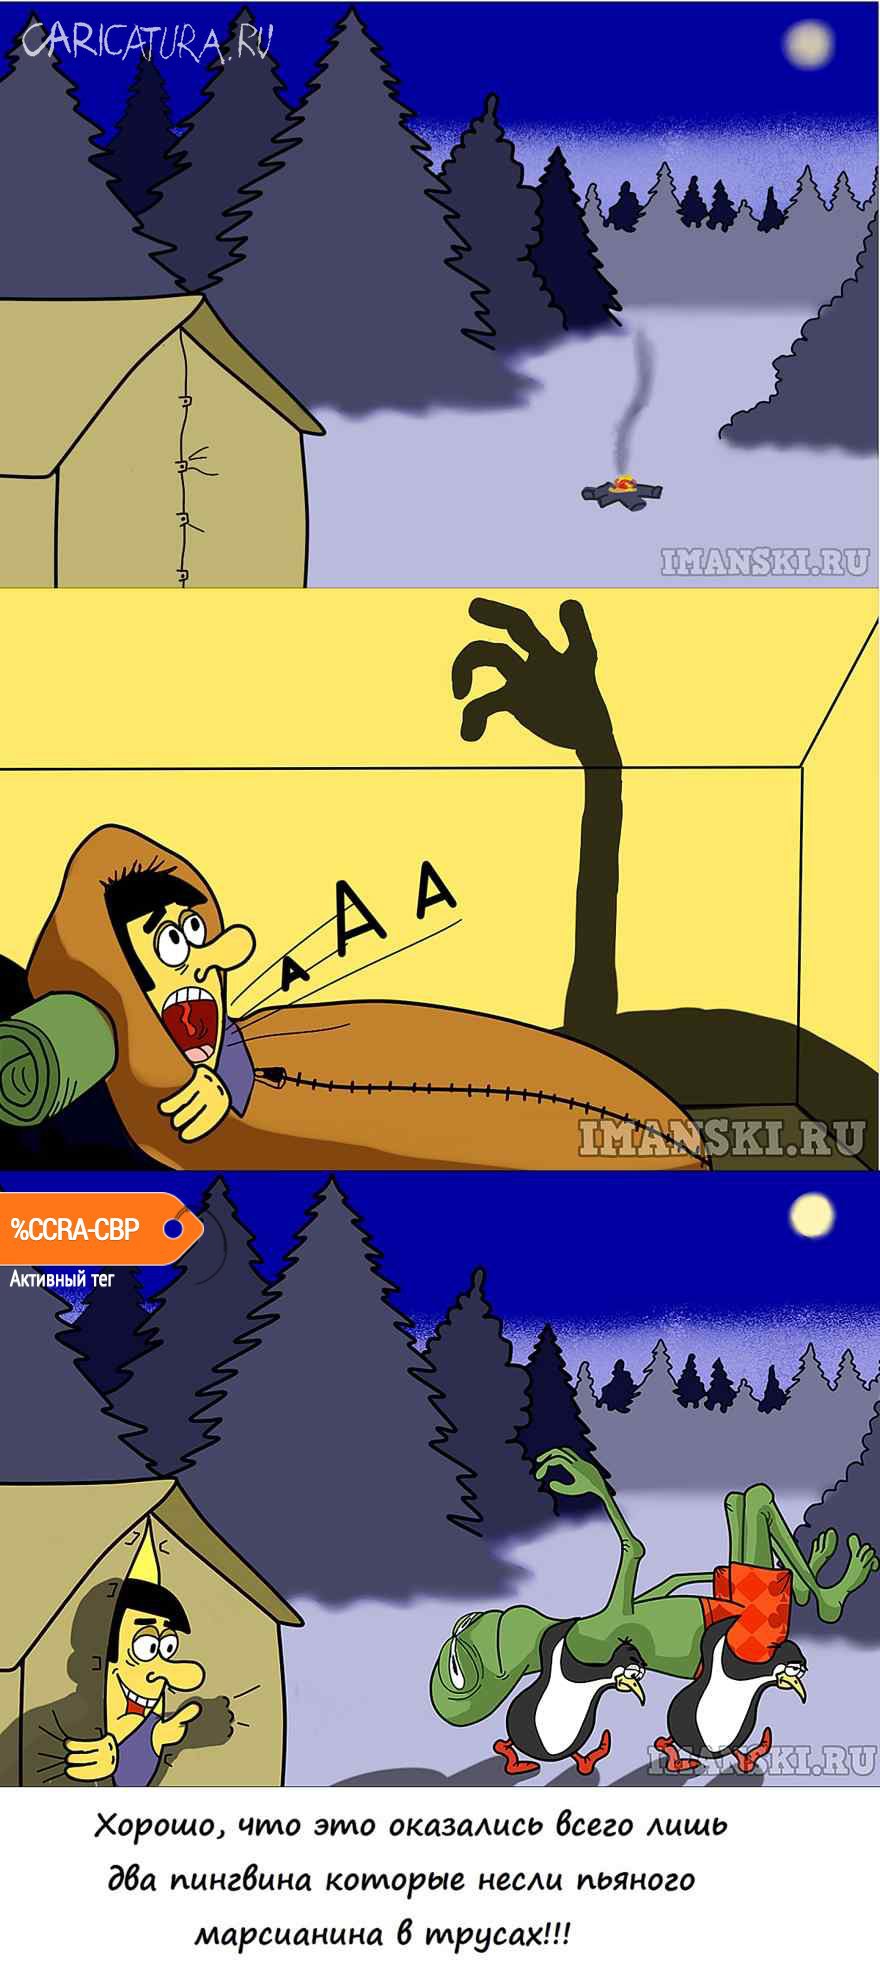 Комикс "Черная-черная рука в темно-темном лесу", Игорь Иманский